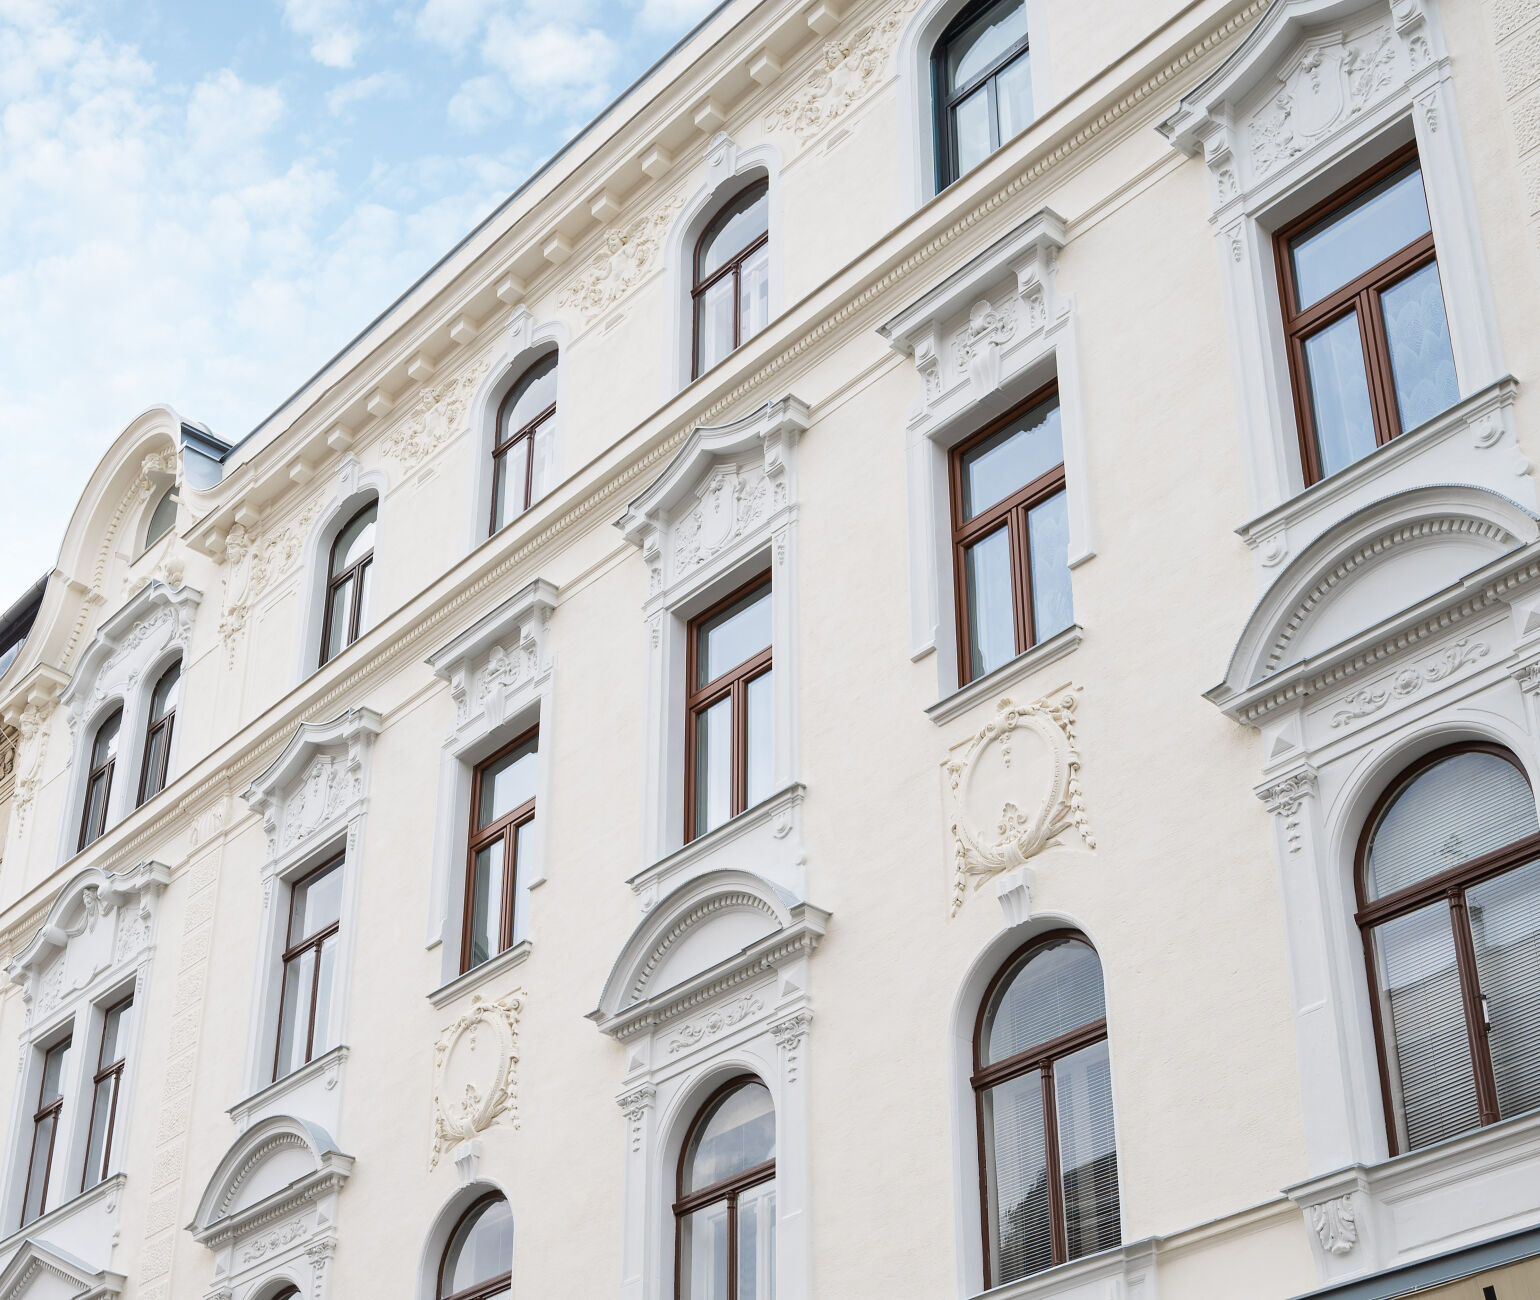 Wunderschöne Fassade im typischen Wien Charme nach der liebevollen Sanierung durch die 3SI Immogroup.